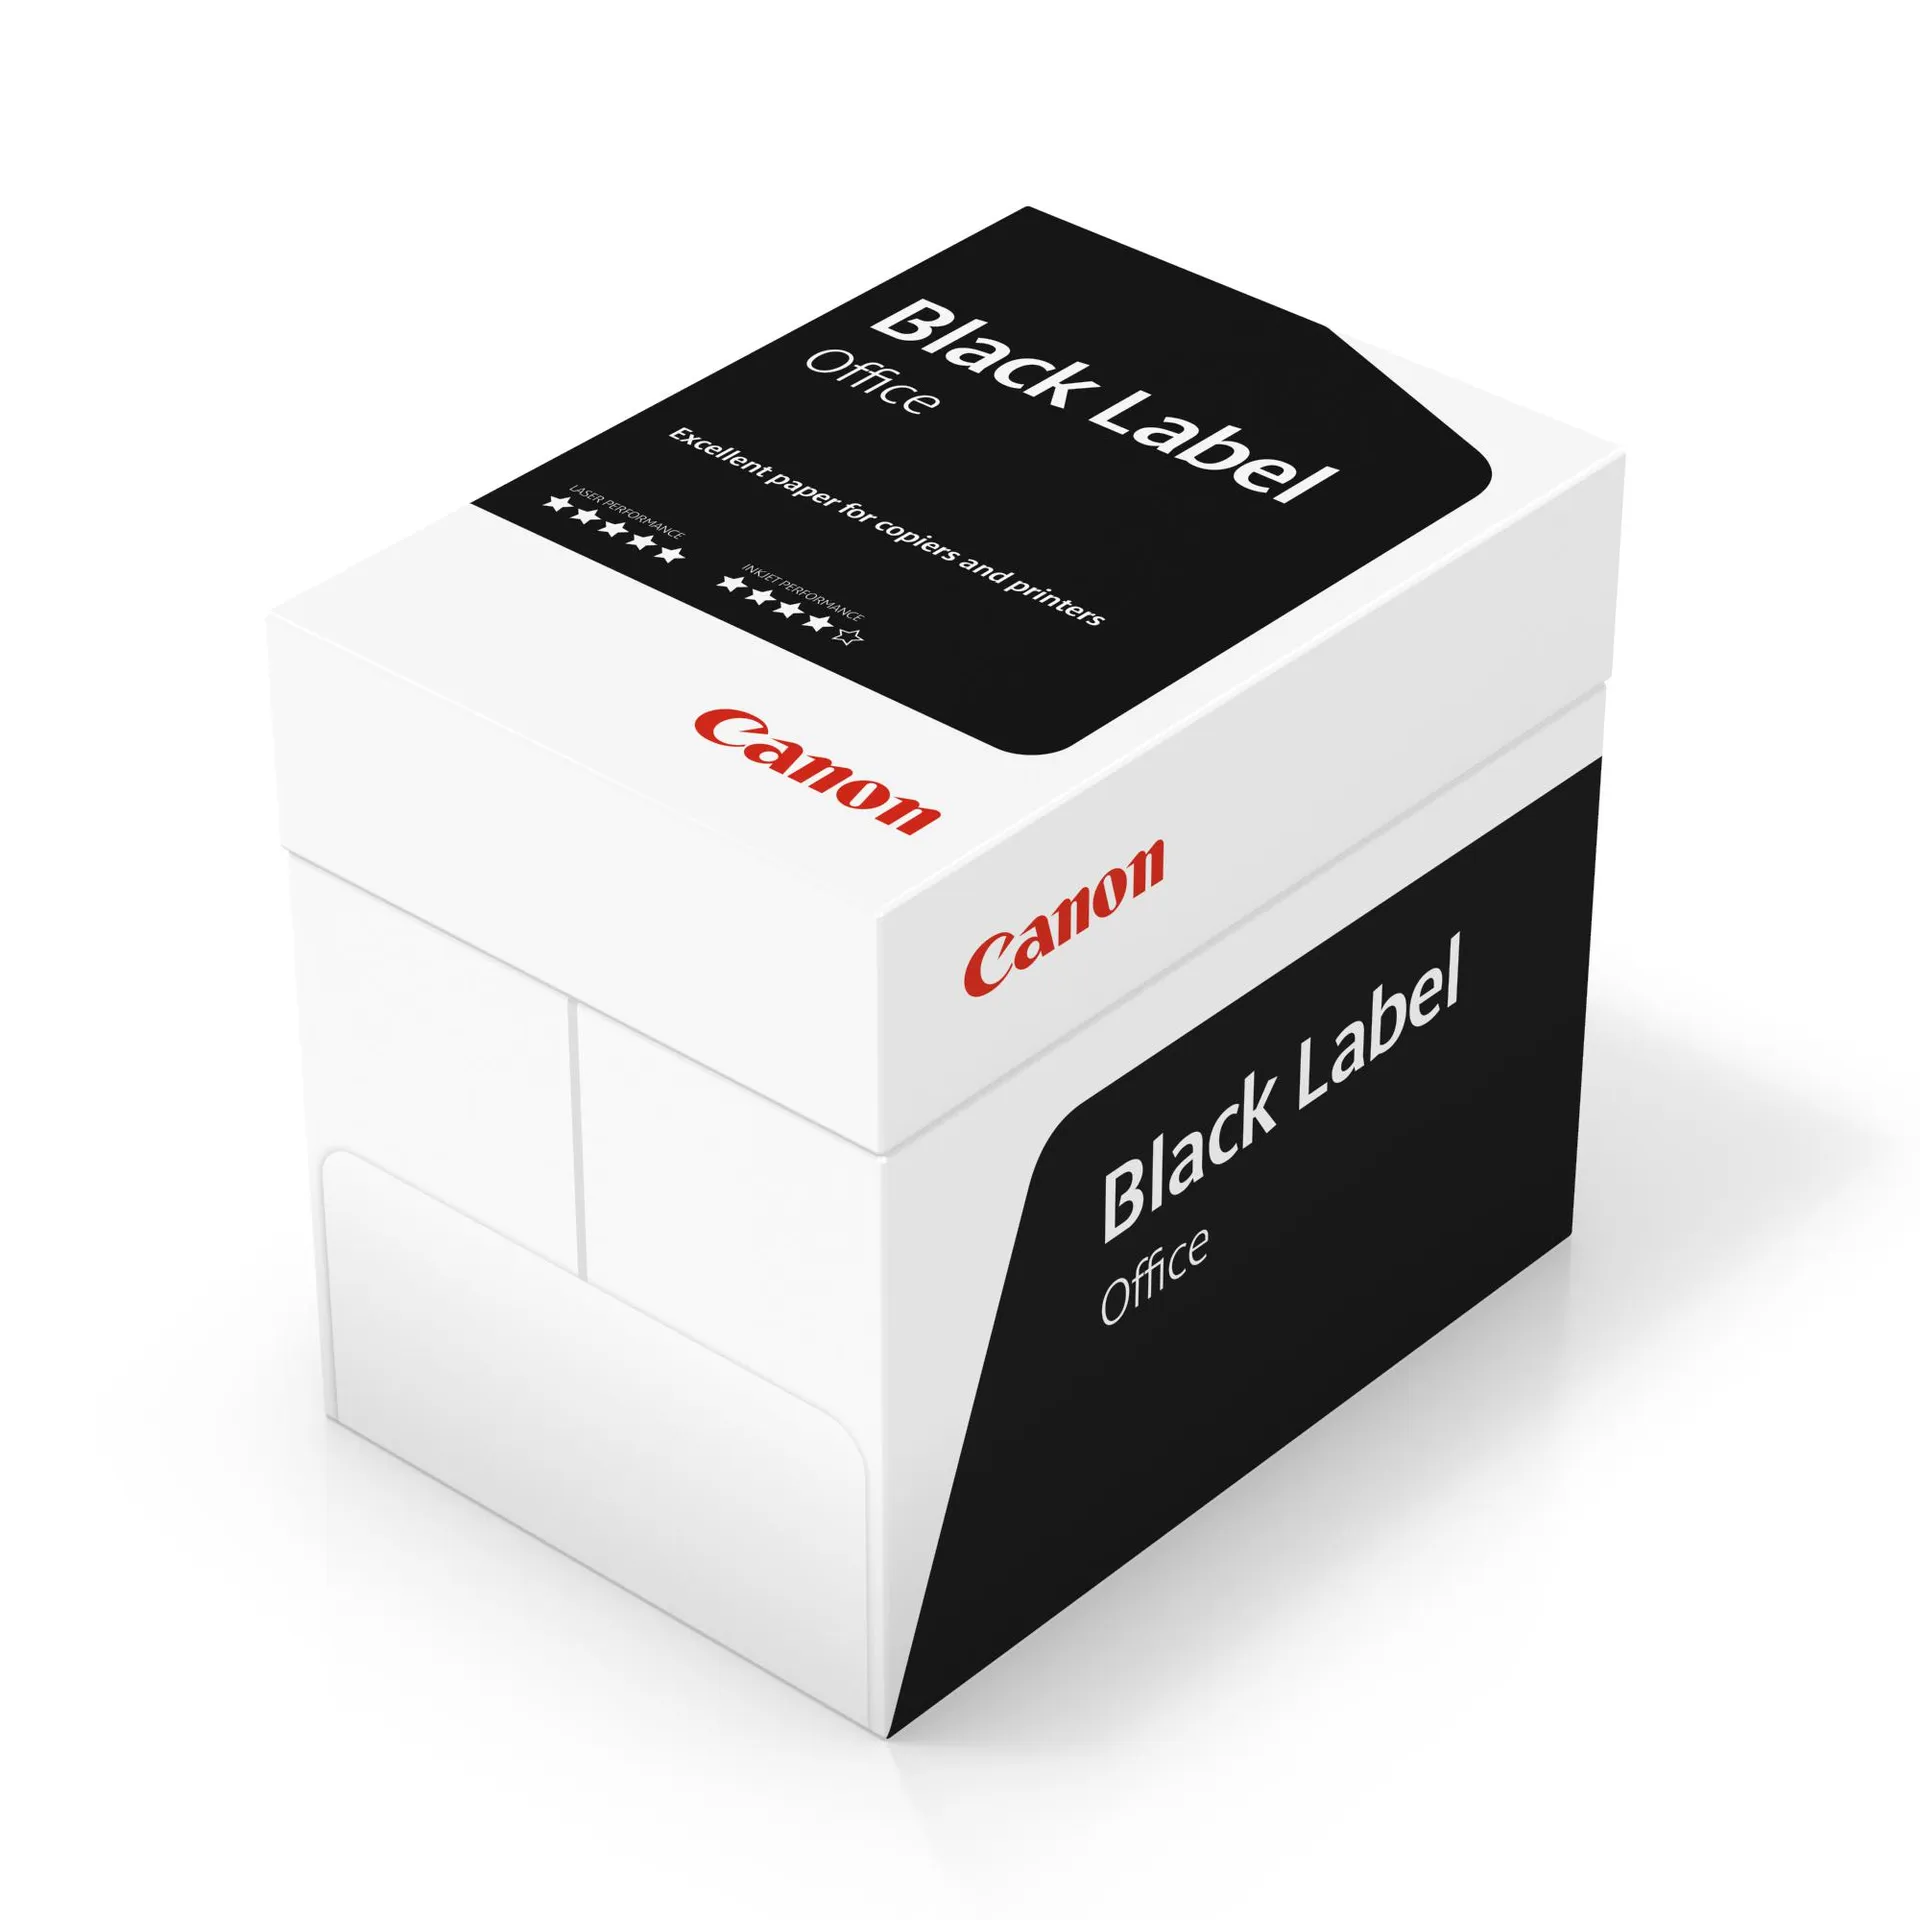 Canon Black Label Office Papier A3 80 g/m² Wit